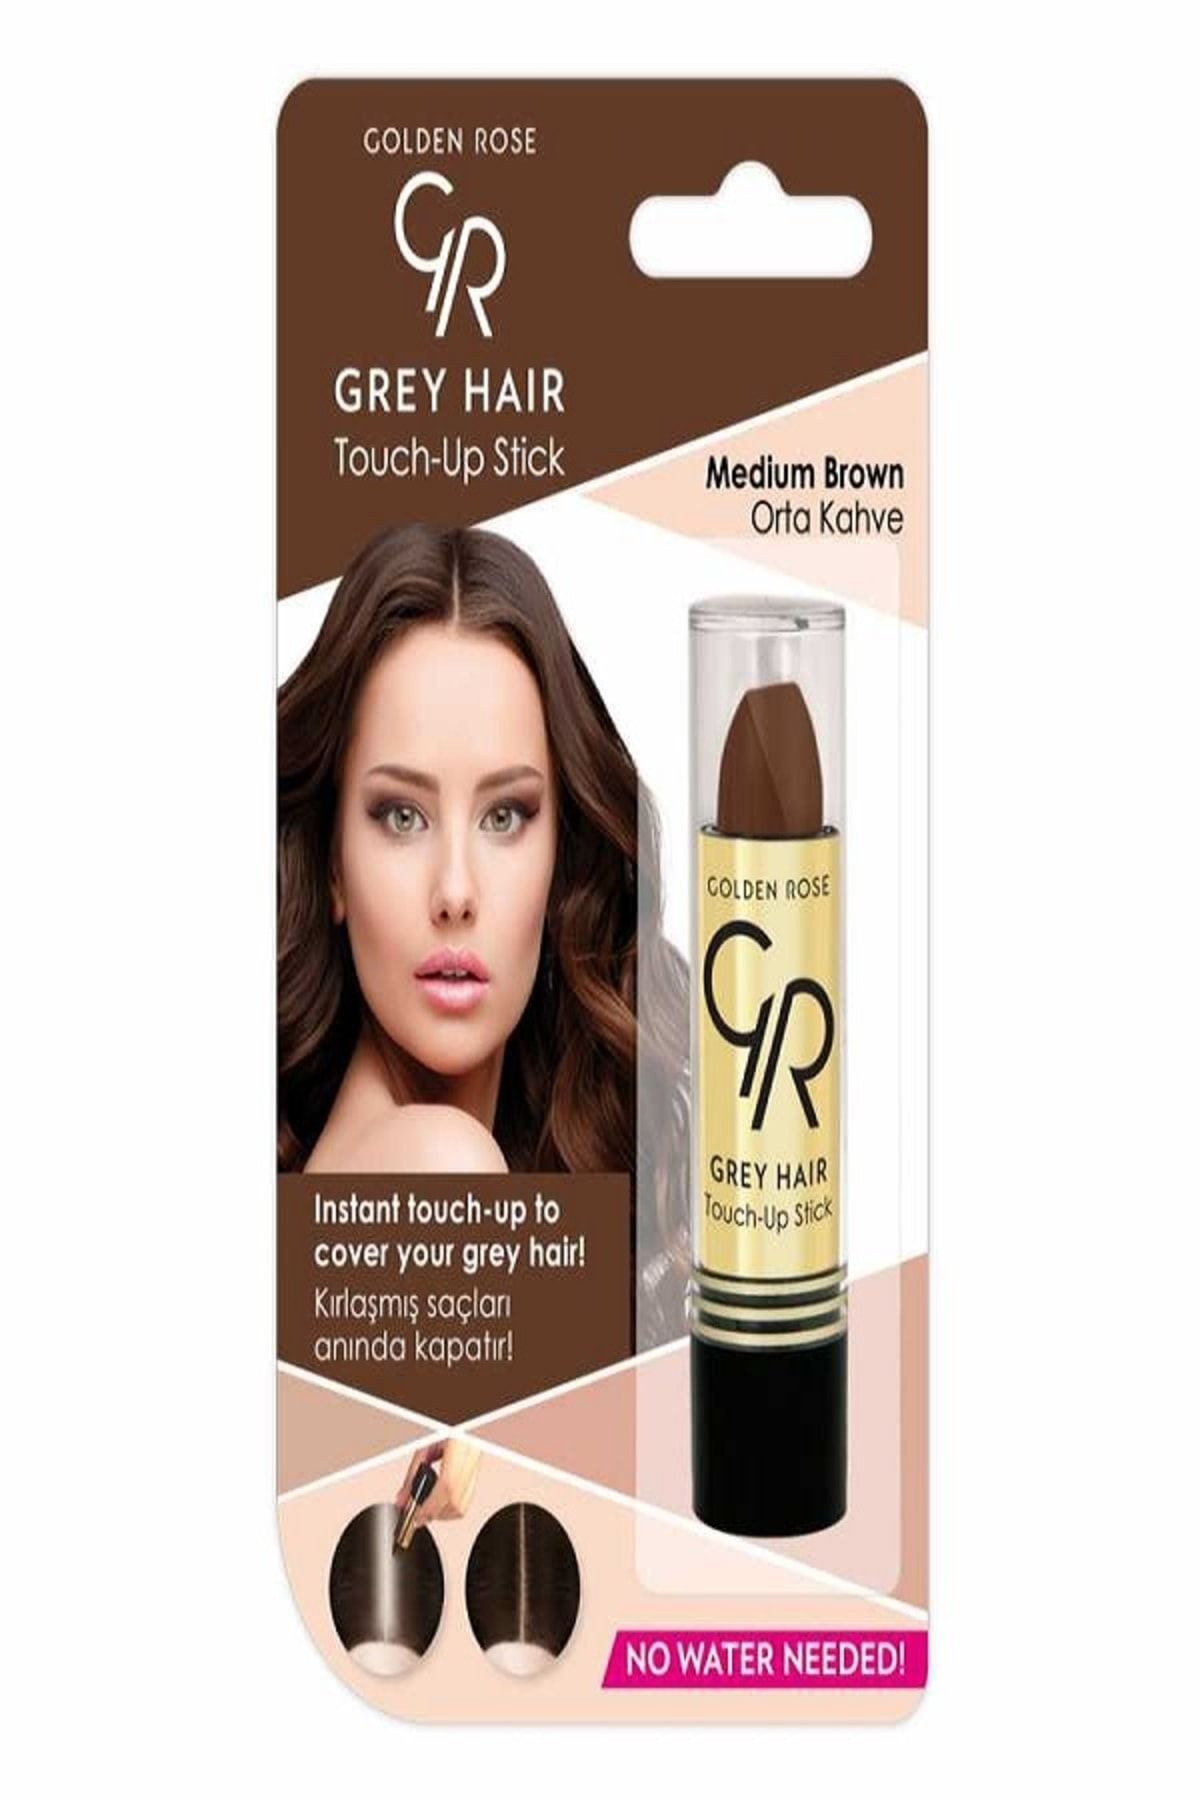 Golden Rose Gray Hair Touch-Up Stick No:03 Medium Brown - Saç Beyazlarını Kapatan ORTA KAHVE